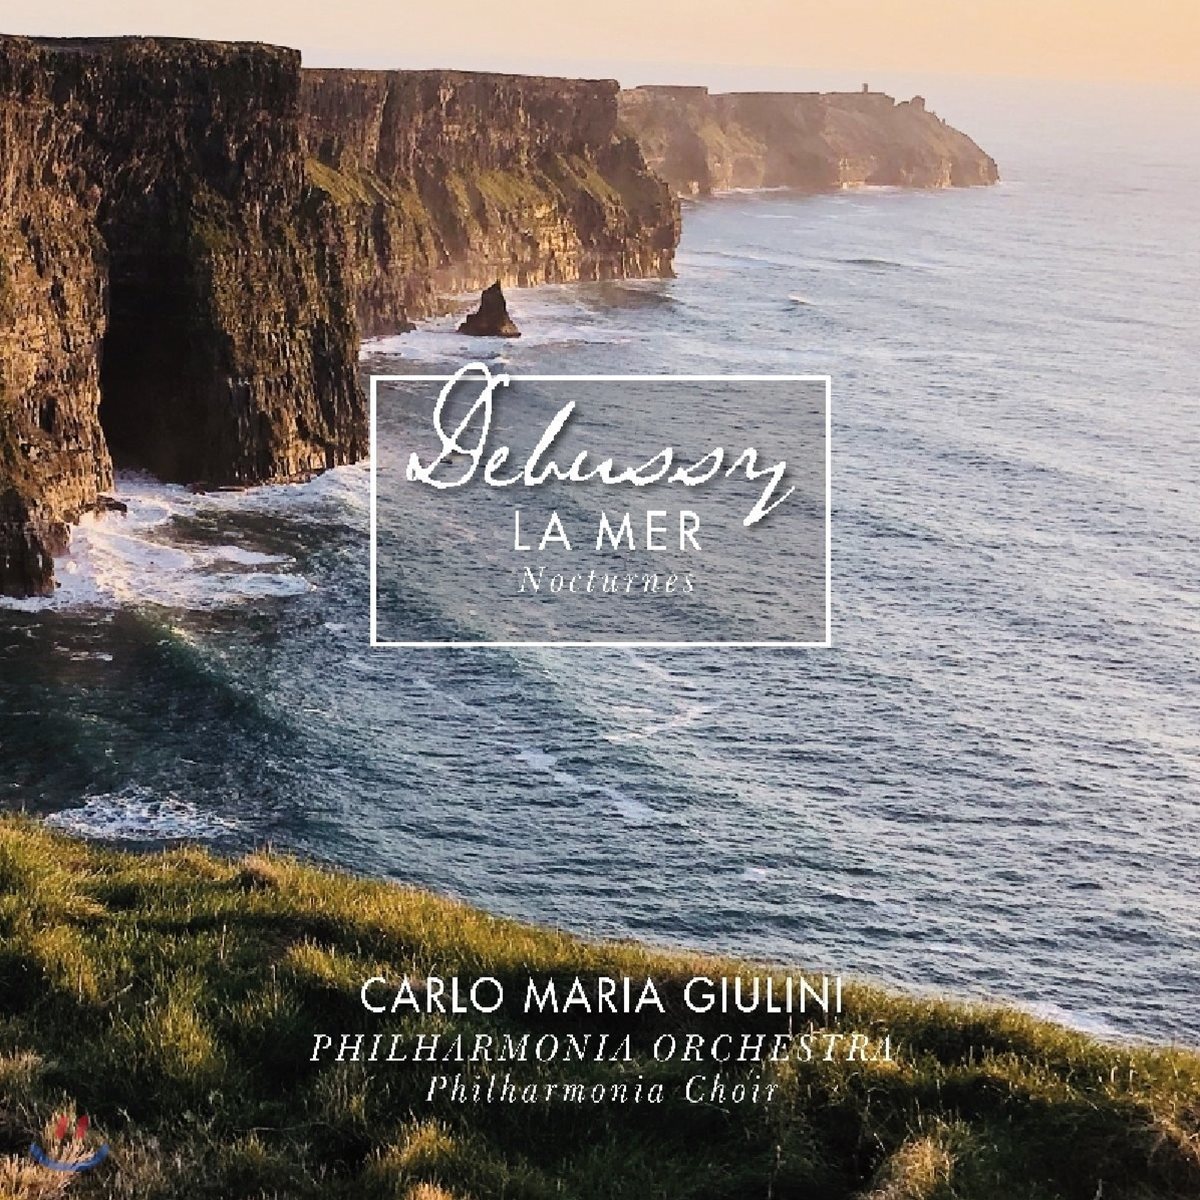 Carlo Maria Giulini 드뷔시: 바다, 녹턴 (Debussy: La Mer, Nocturnes) [LP]